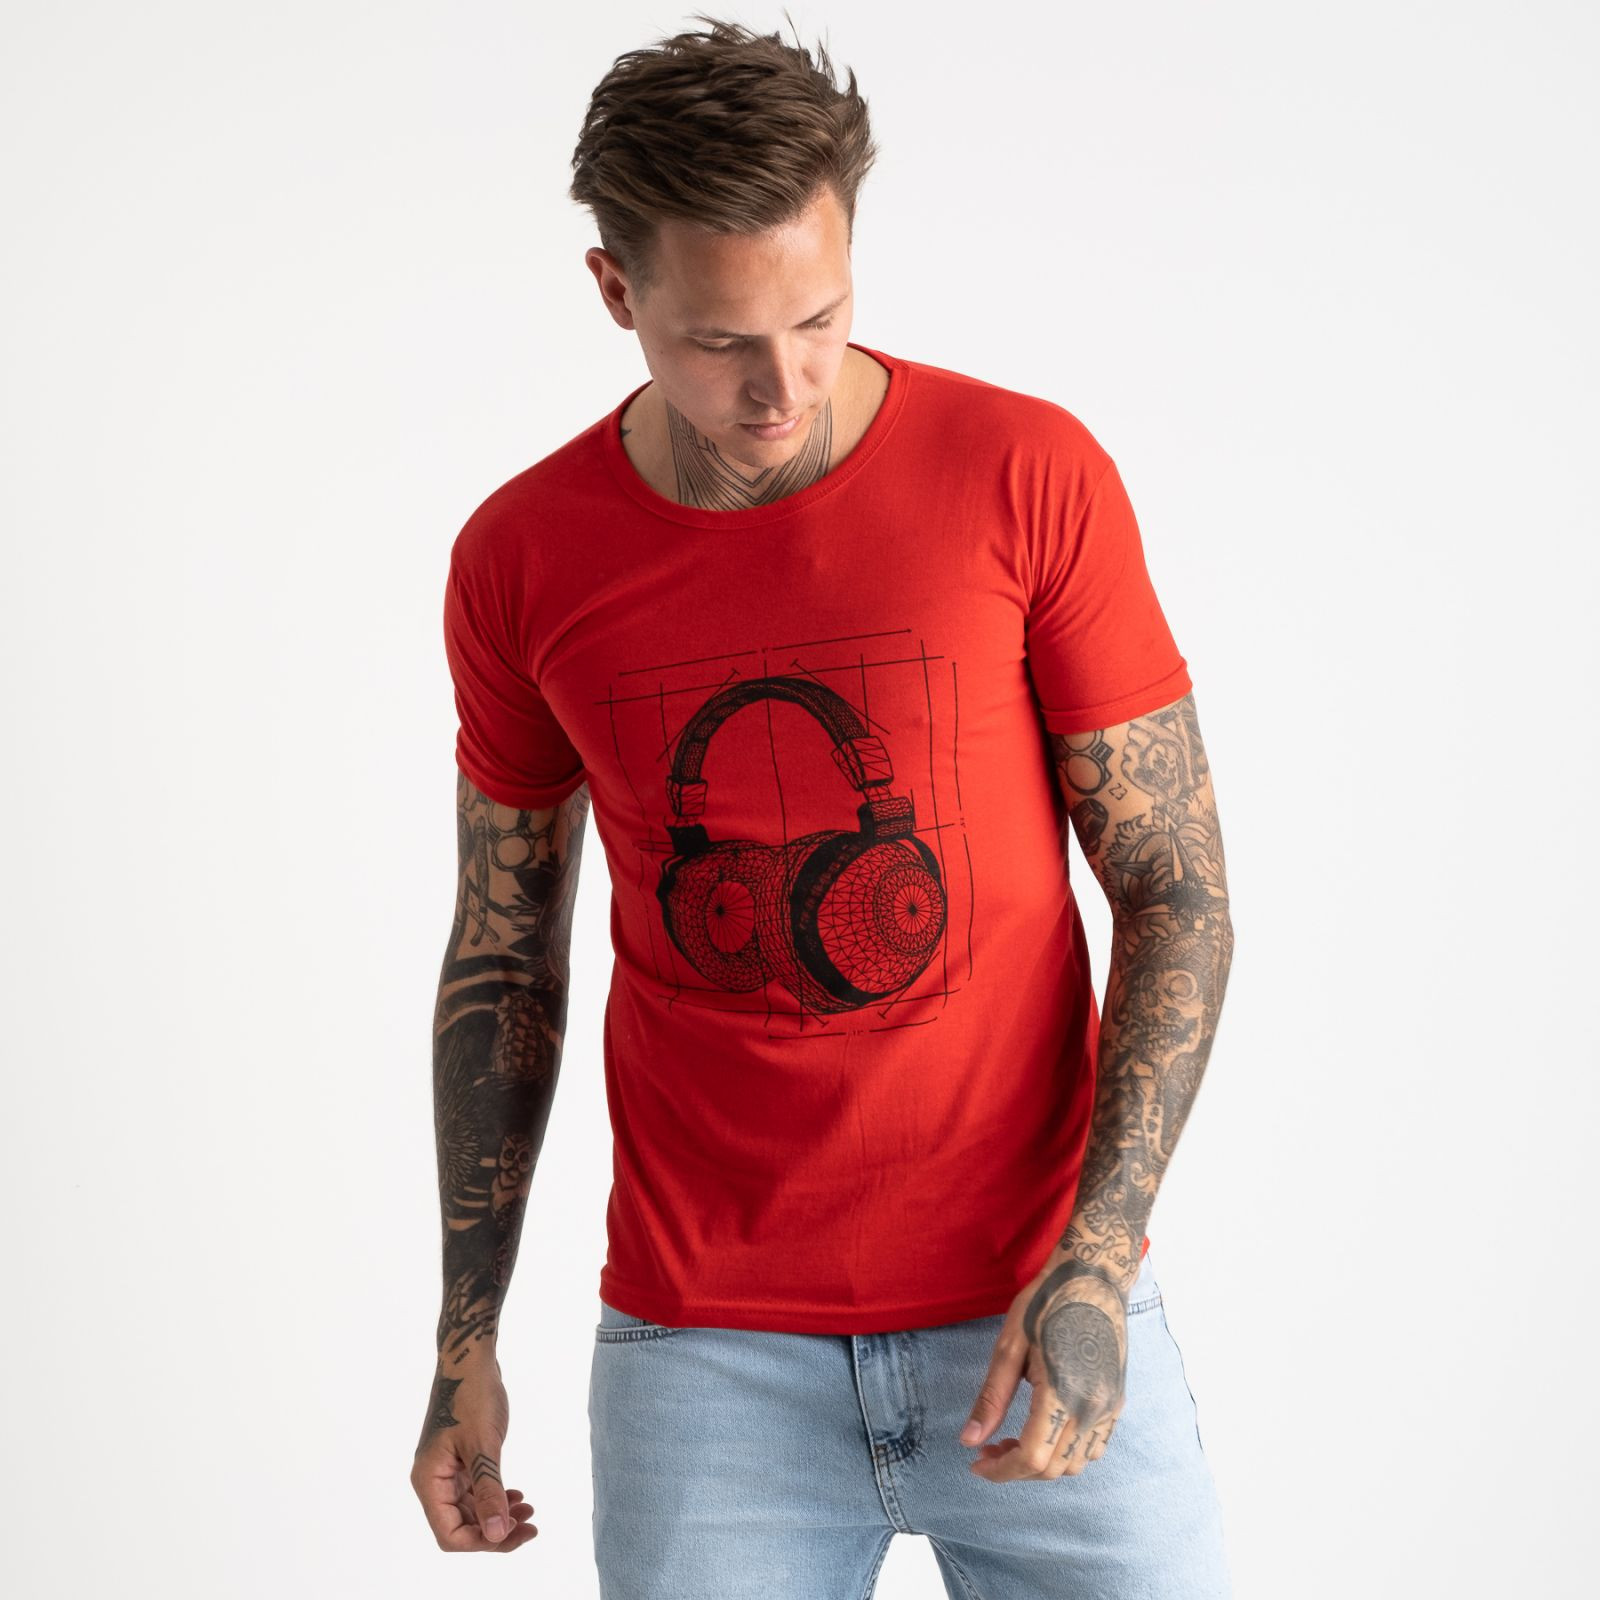 2627-3 красная футболка мужская с принтом (4 ед. размеры: M.L.XL.2XL)